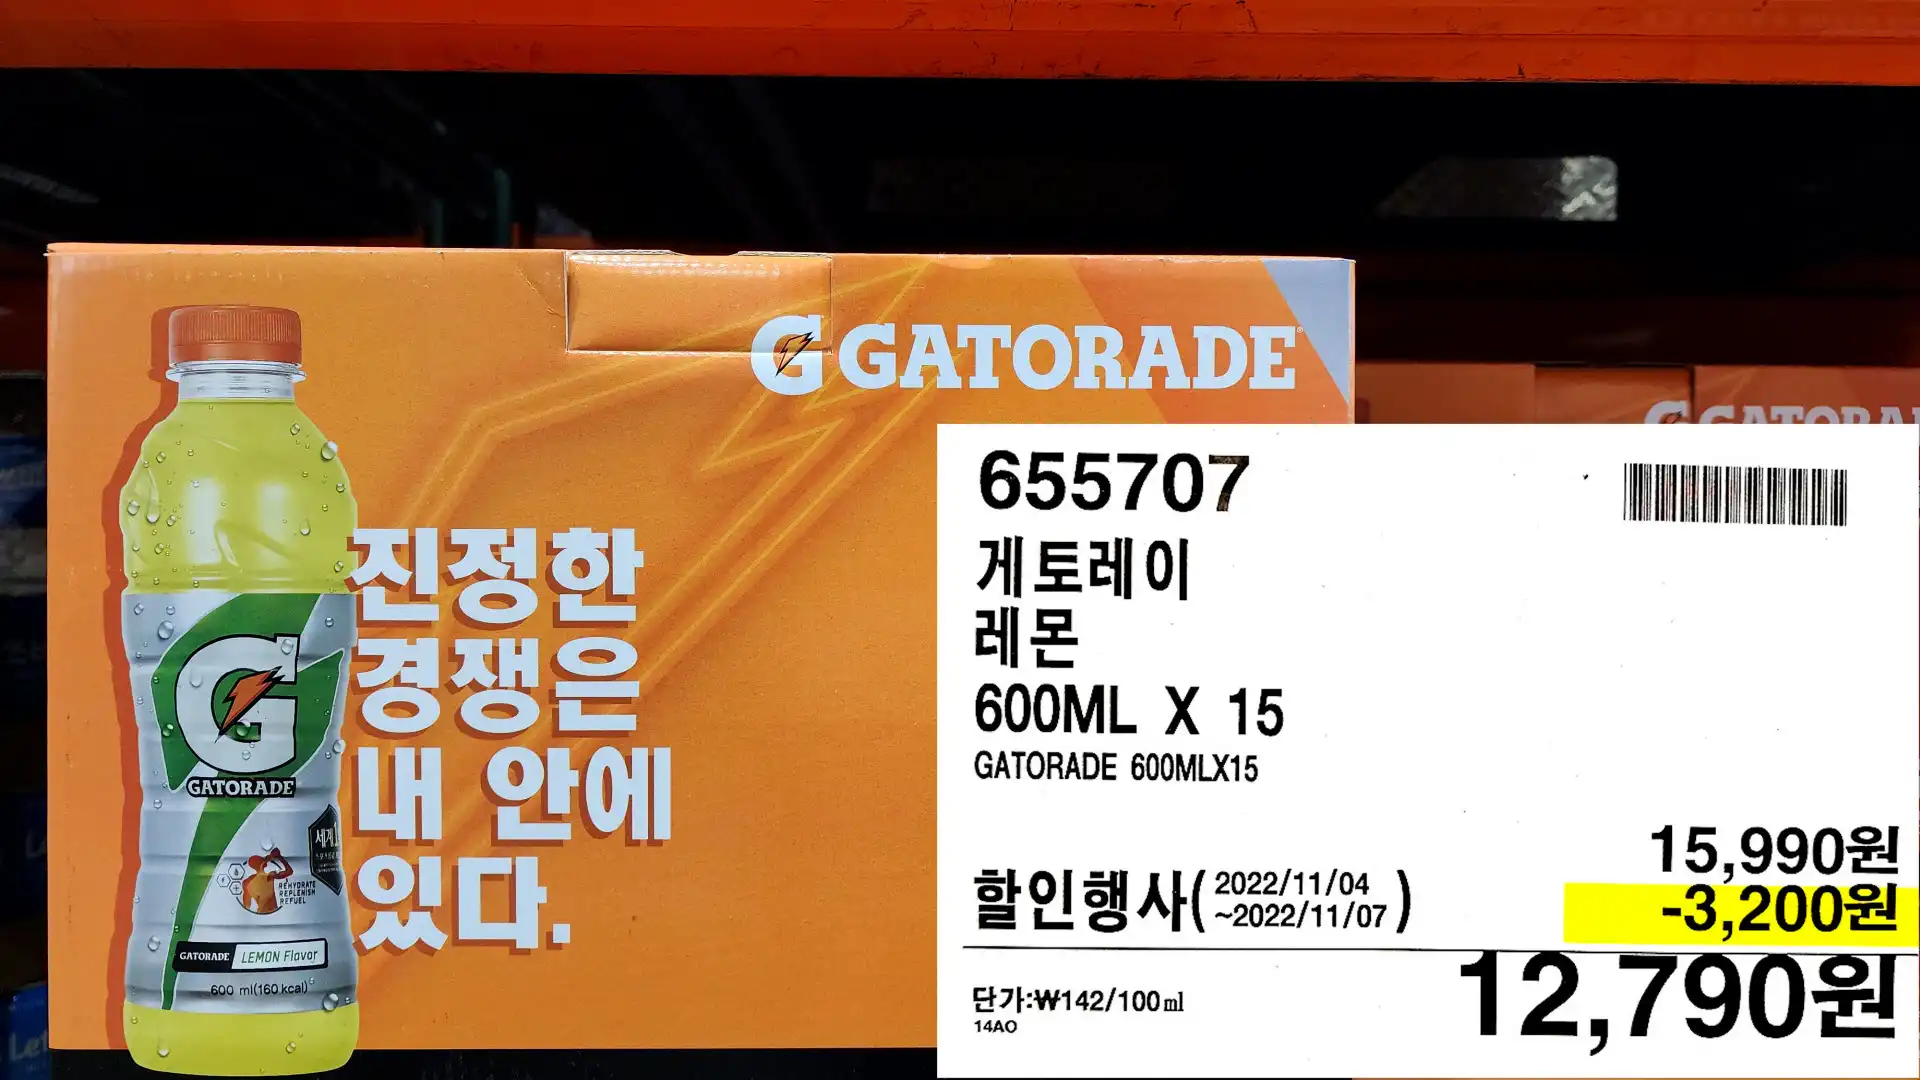 게토레이
레몬
600ML X 15
GATORADE 600MLX15
12,790원